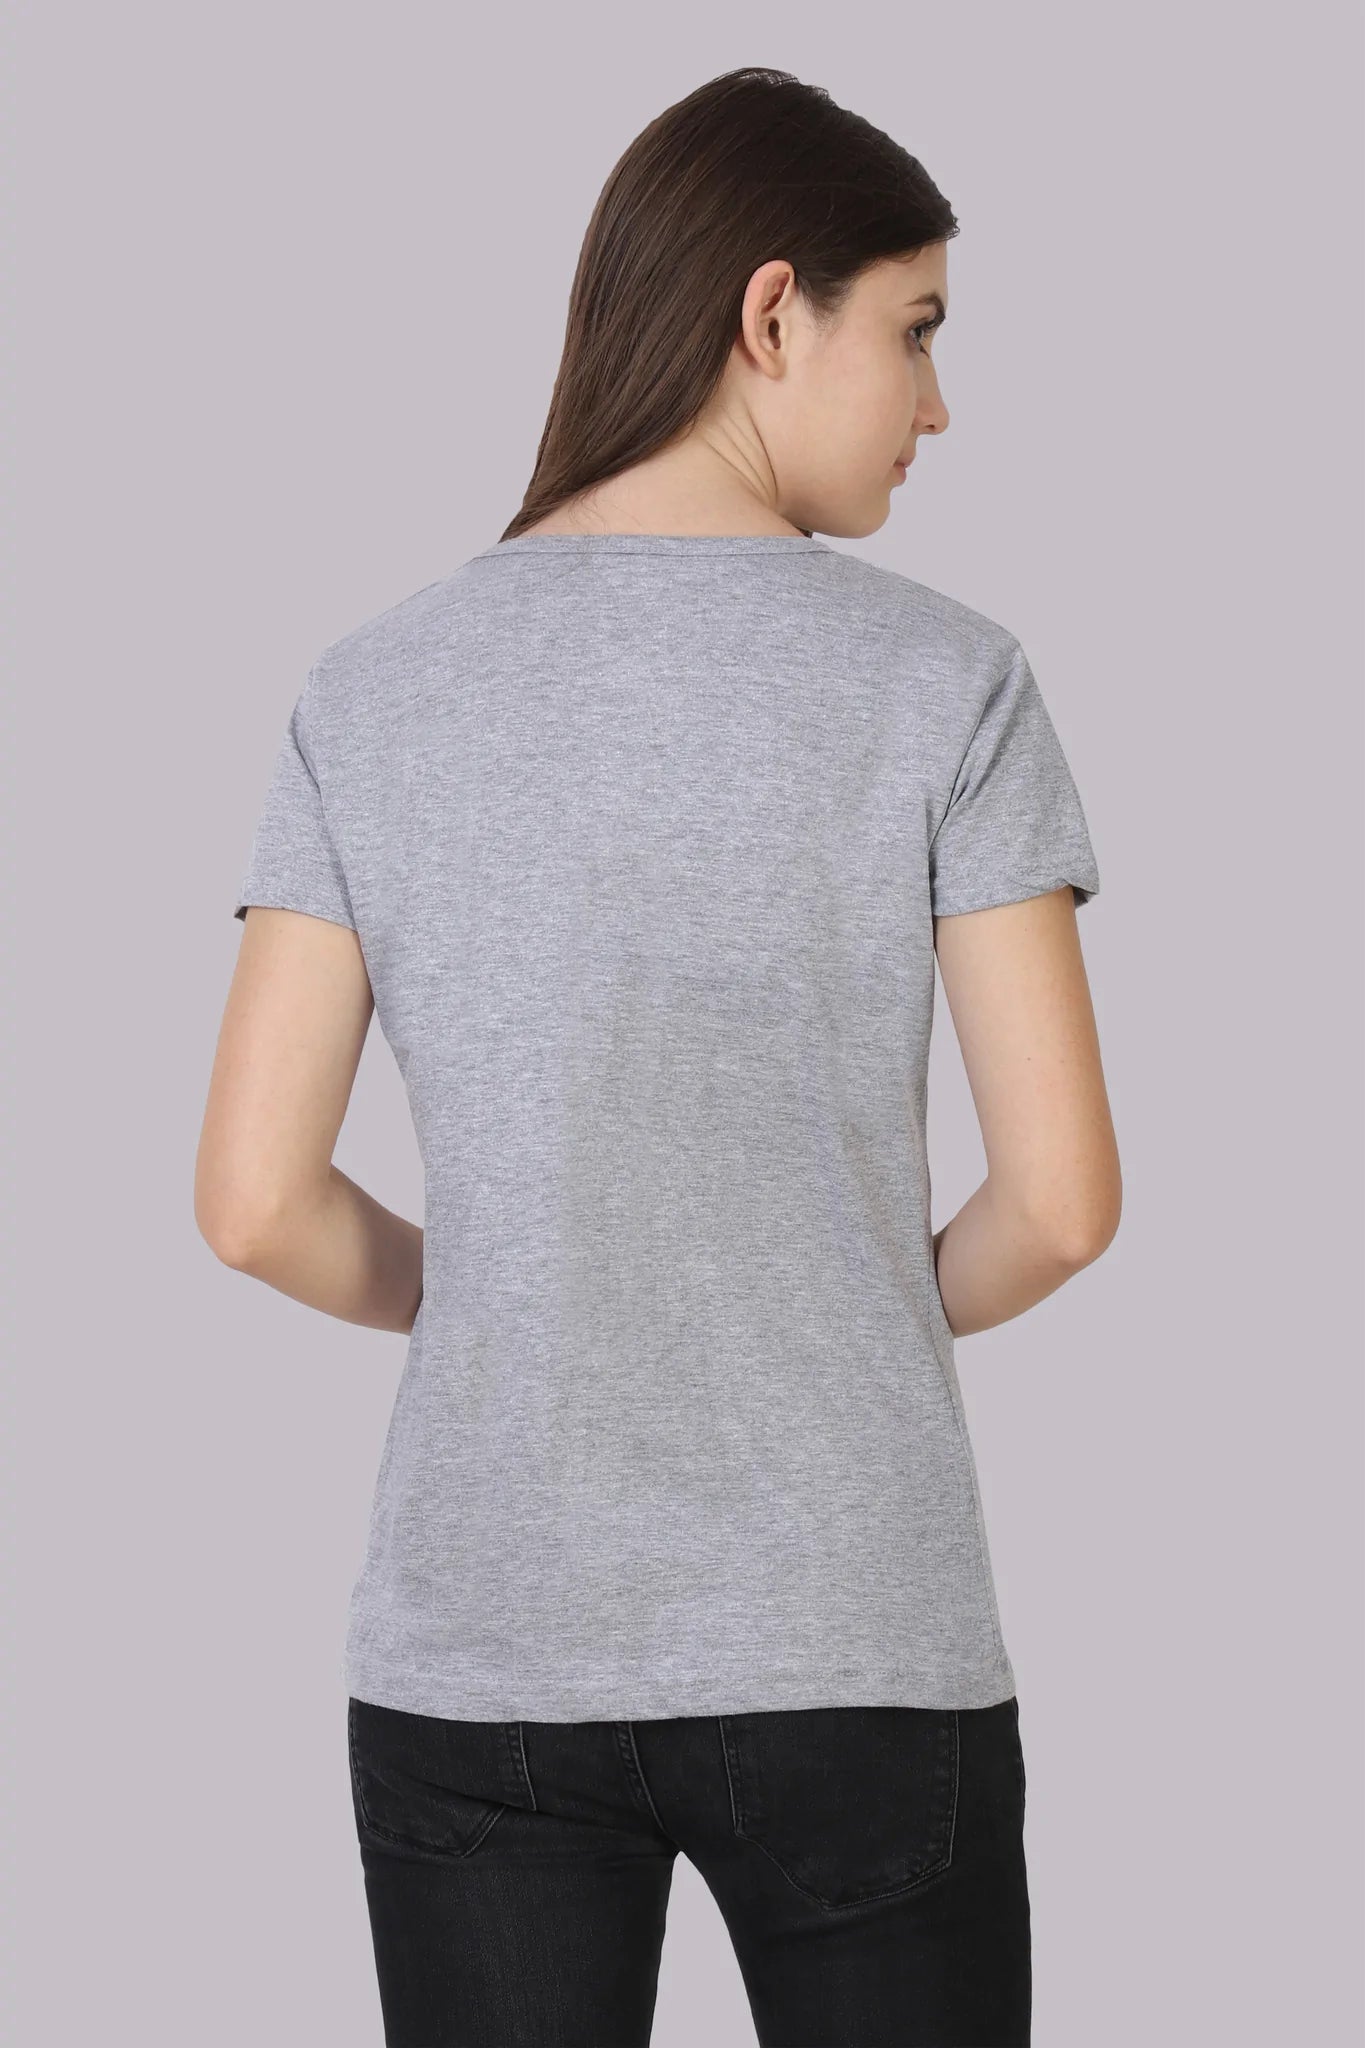 Women's Cotton Plain Round Neck Half Sleeve Grey Melange Color T-Shirt